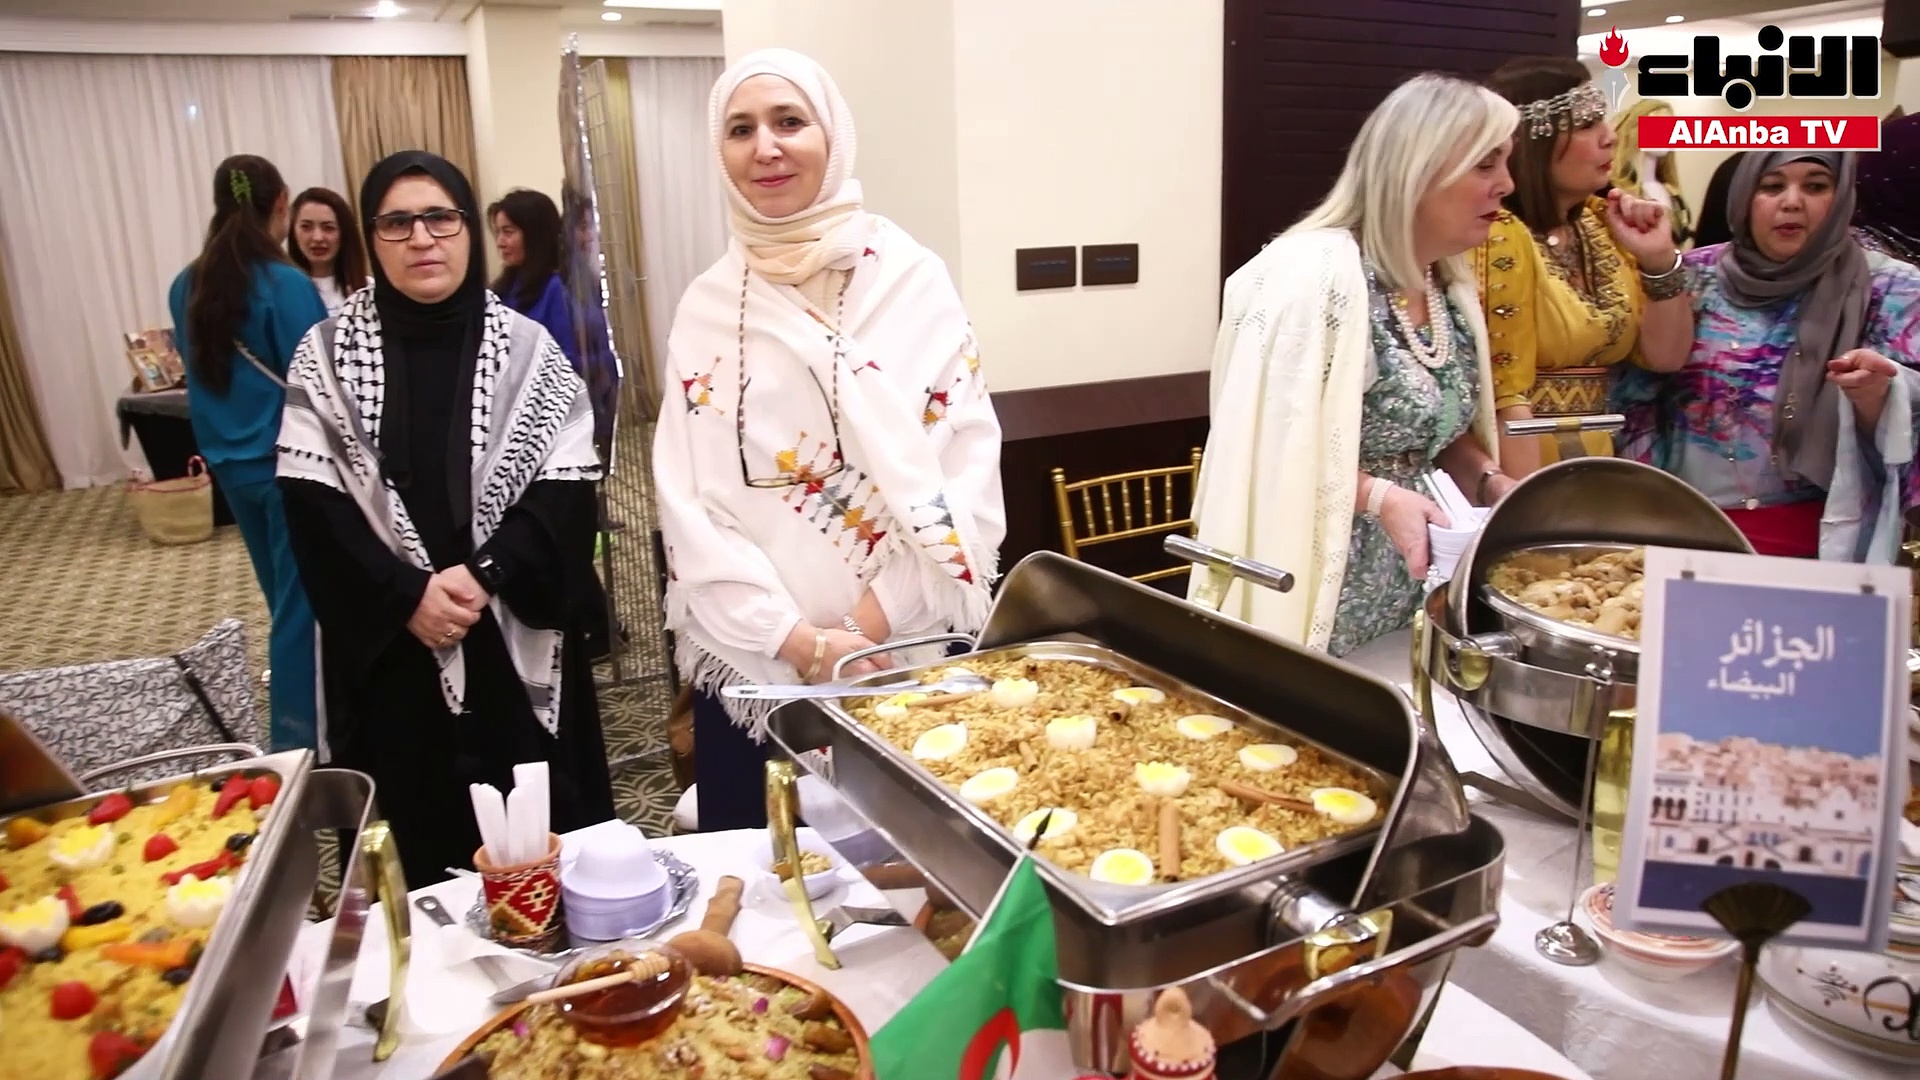 السفارة الجزائرية افتتحت صالون فن الطبخ الجزائري الأول في الكويت